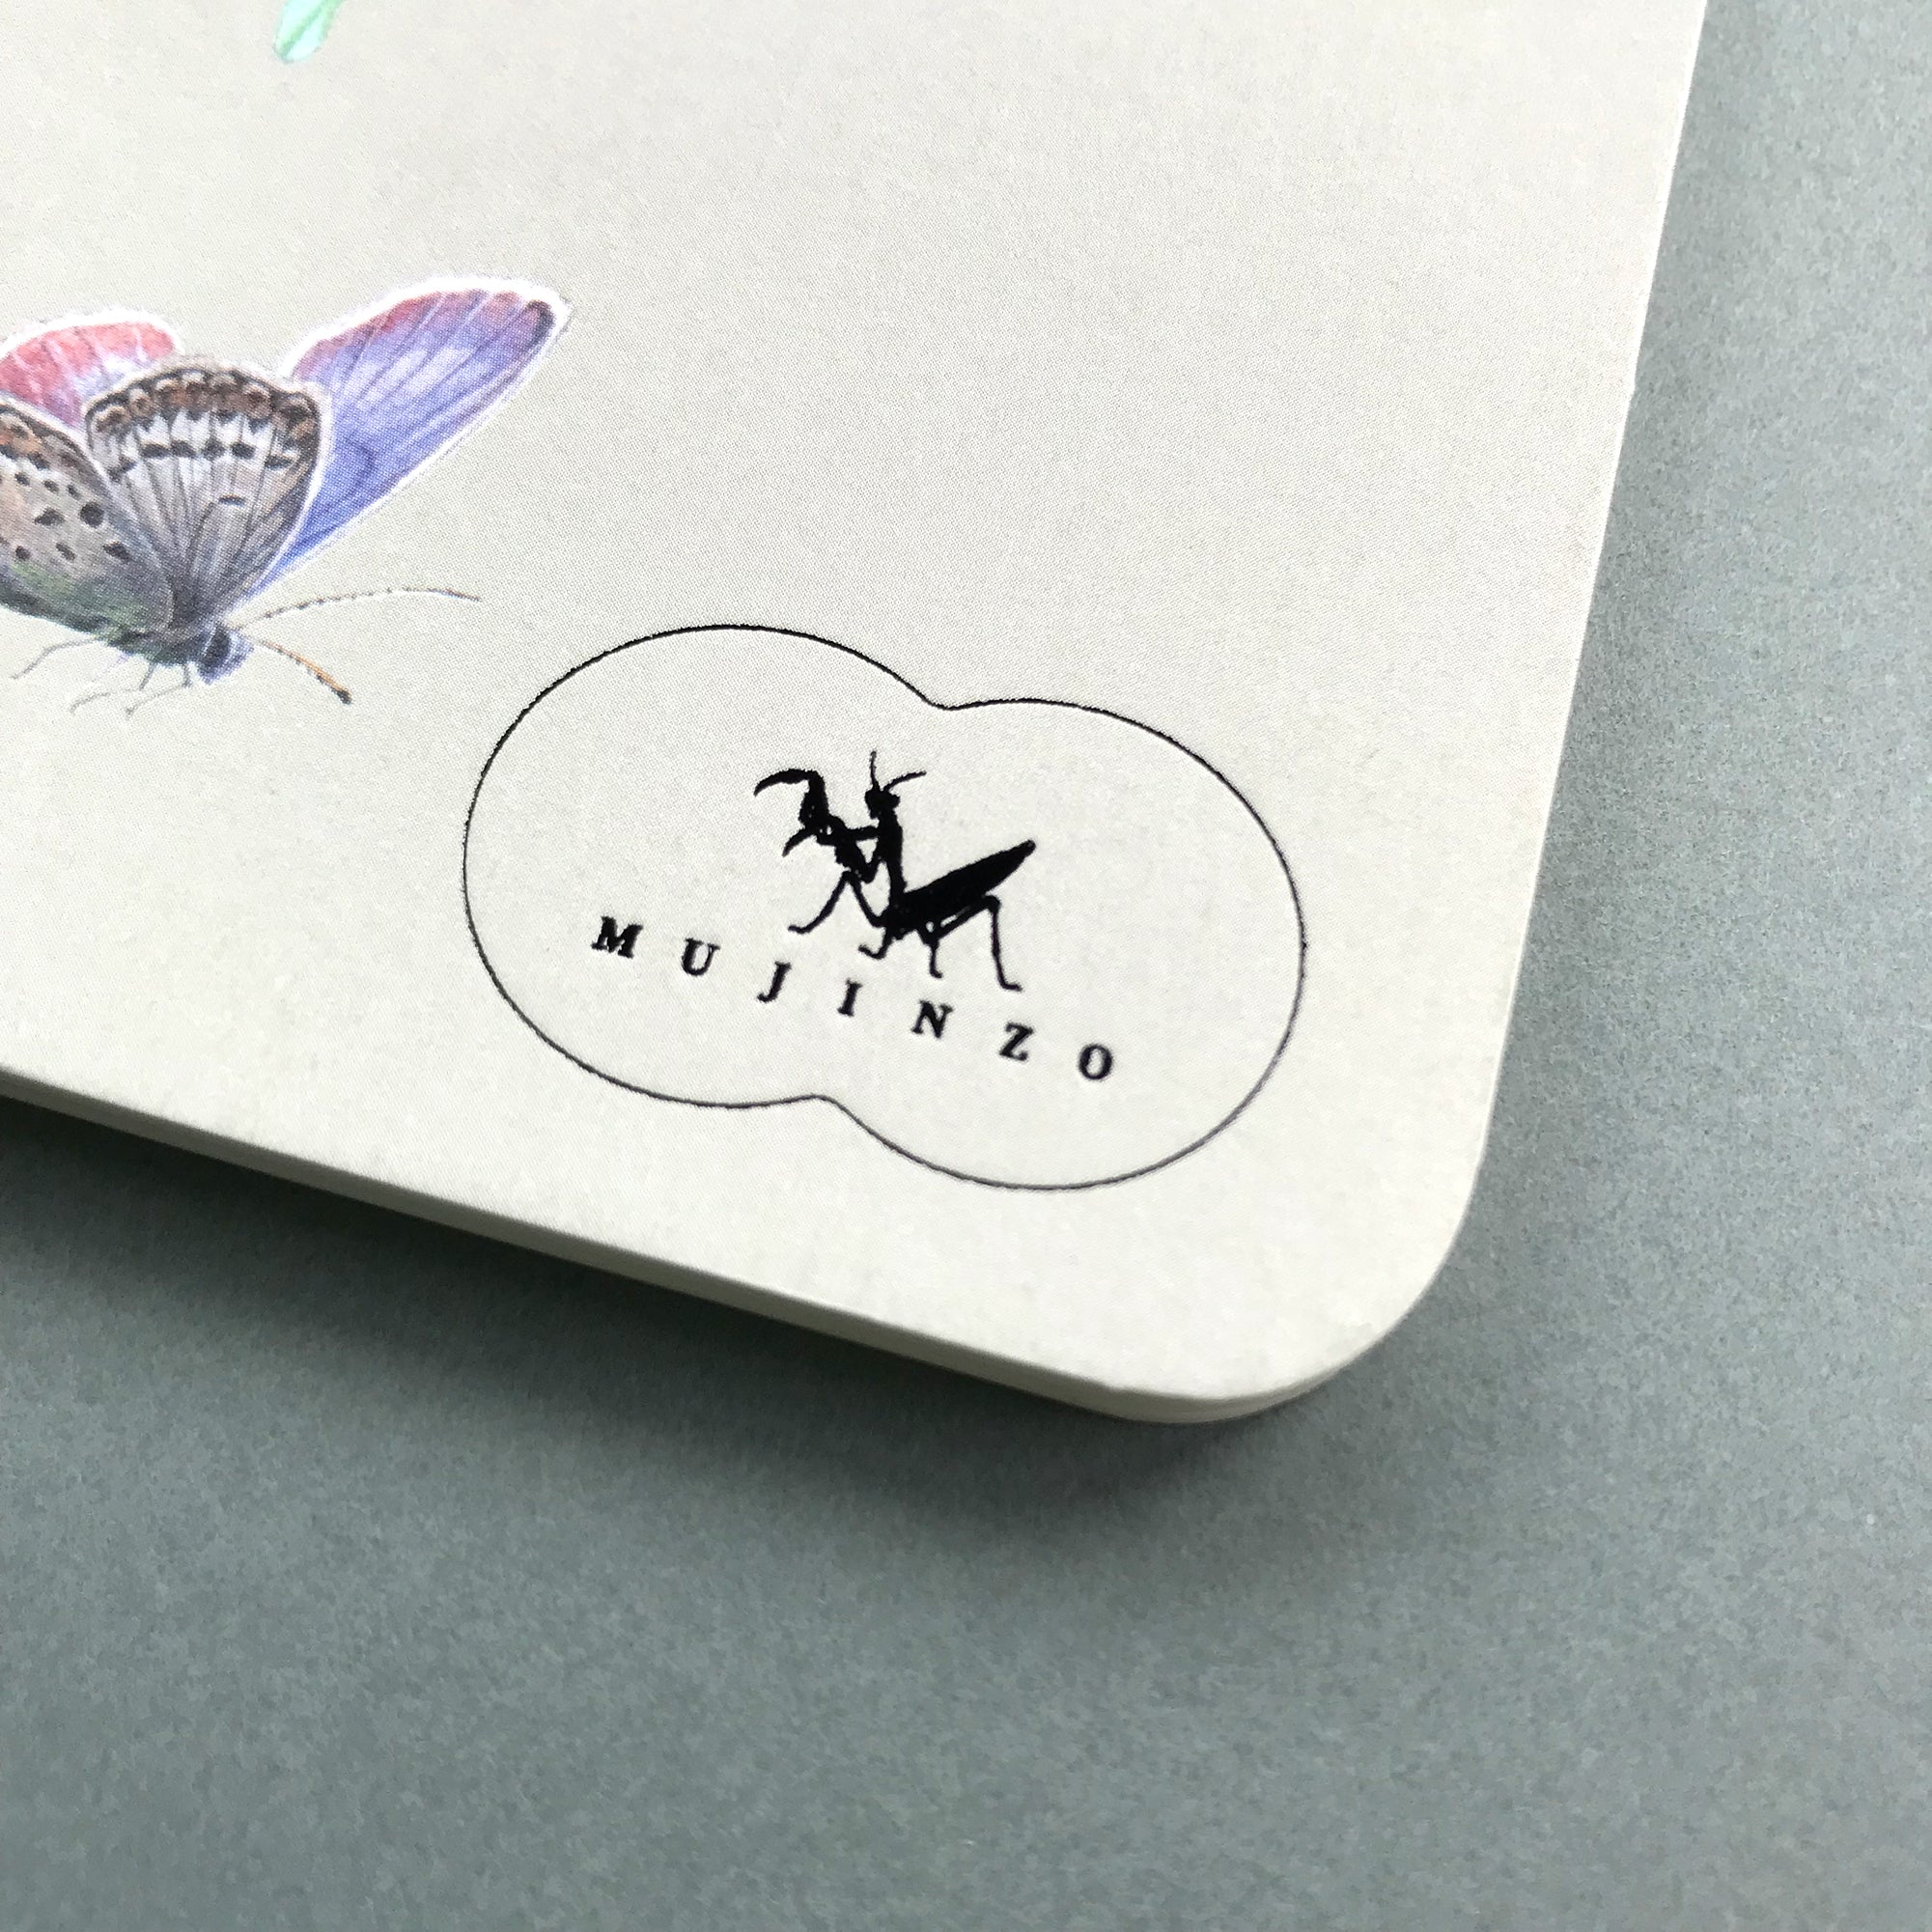 MUJINNZO Notebook "Butterfly"